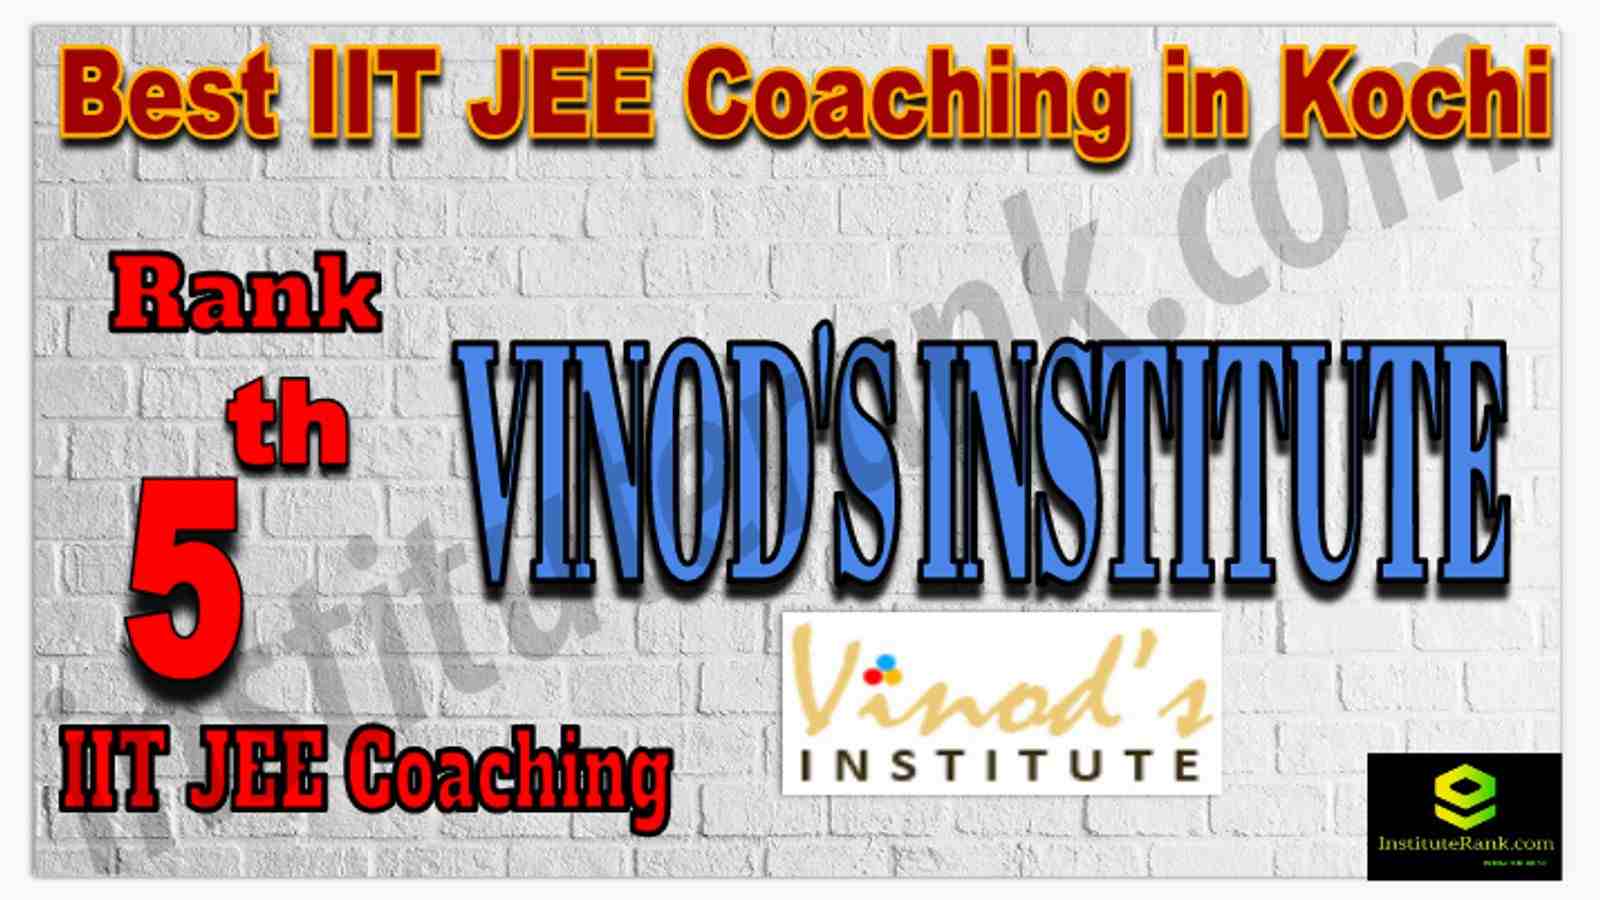 Rank 5th Best IIT JEE Coaching in Kochi